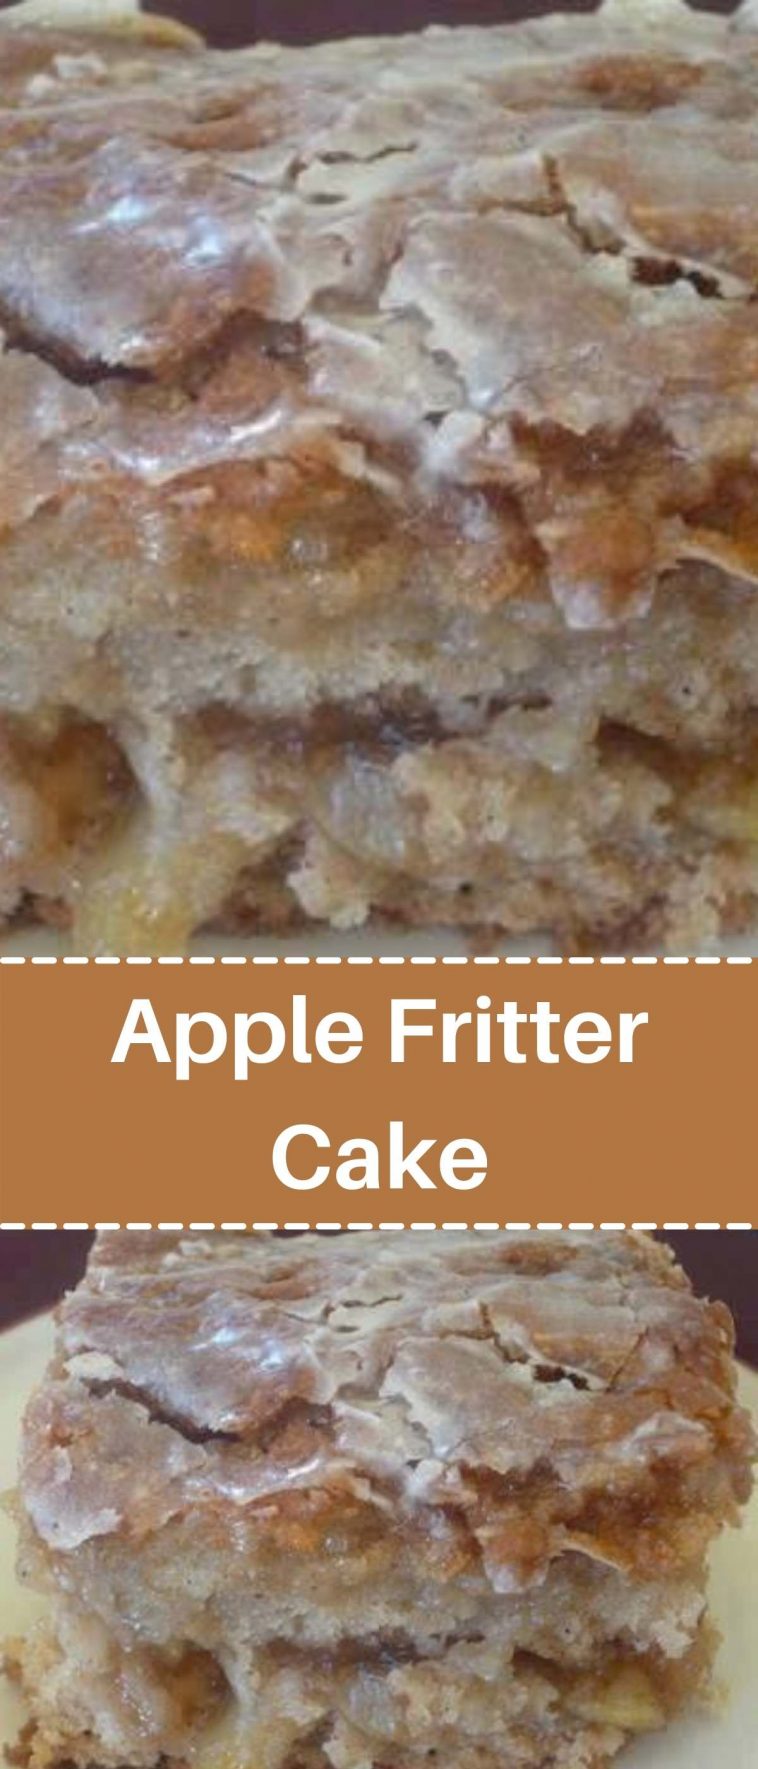 Apple Fritter Cake